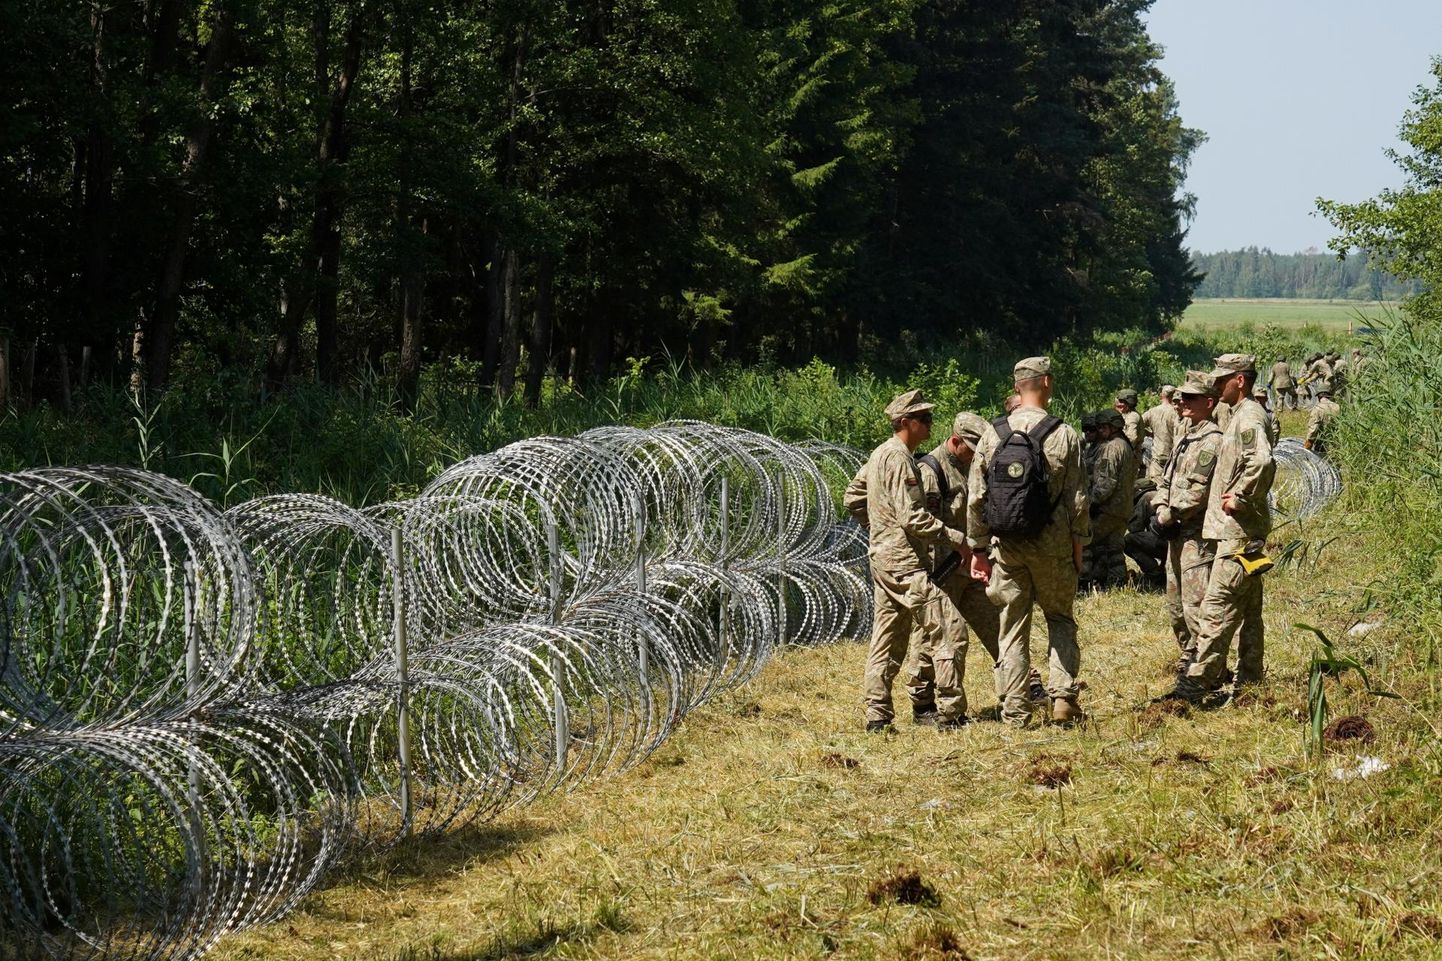 Leedu kaitseväelased Druskininkai piiritsooni lõiketraati paigaldamas. FOTO: Jānis Laizāns/Reuters/Scanpix